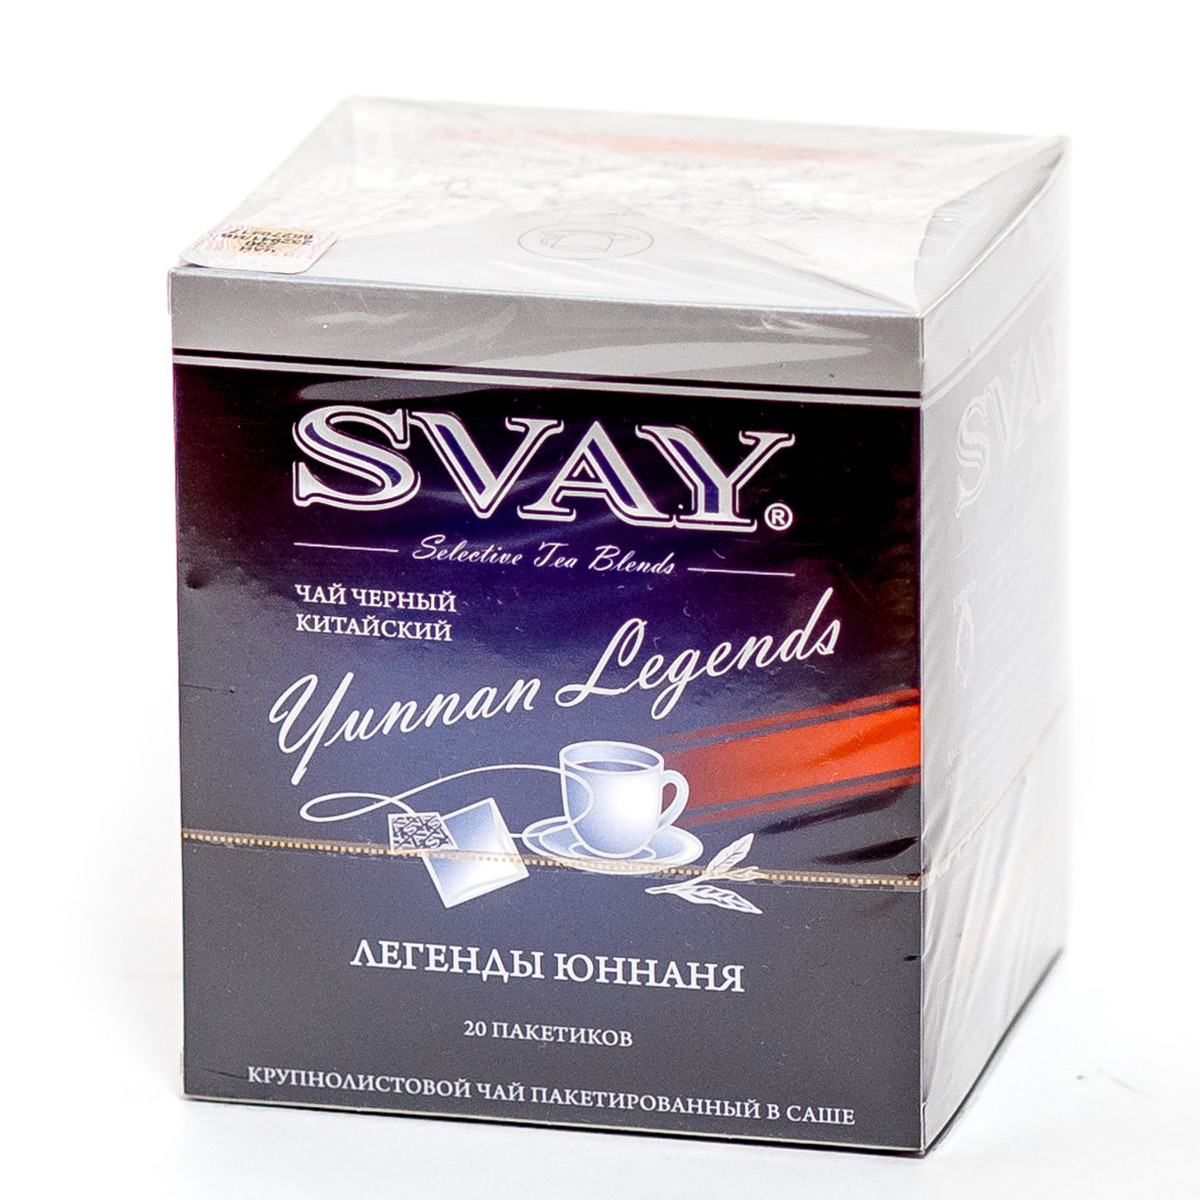 Чай "Svay Yunnan Legends", ТМ "SVAY" чай черный китайский (пакетированный саше 20х2 гр)